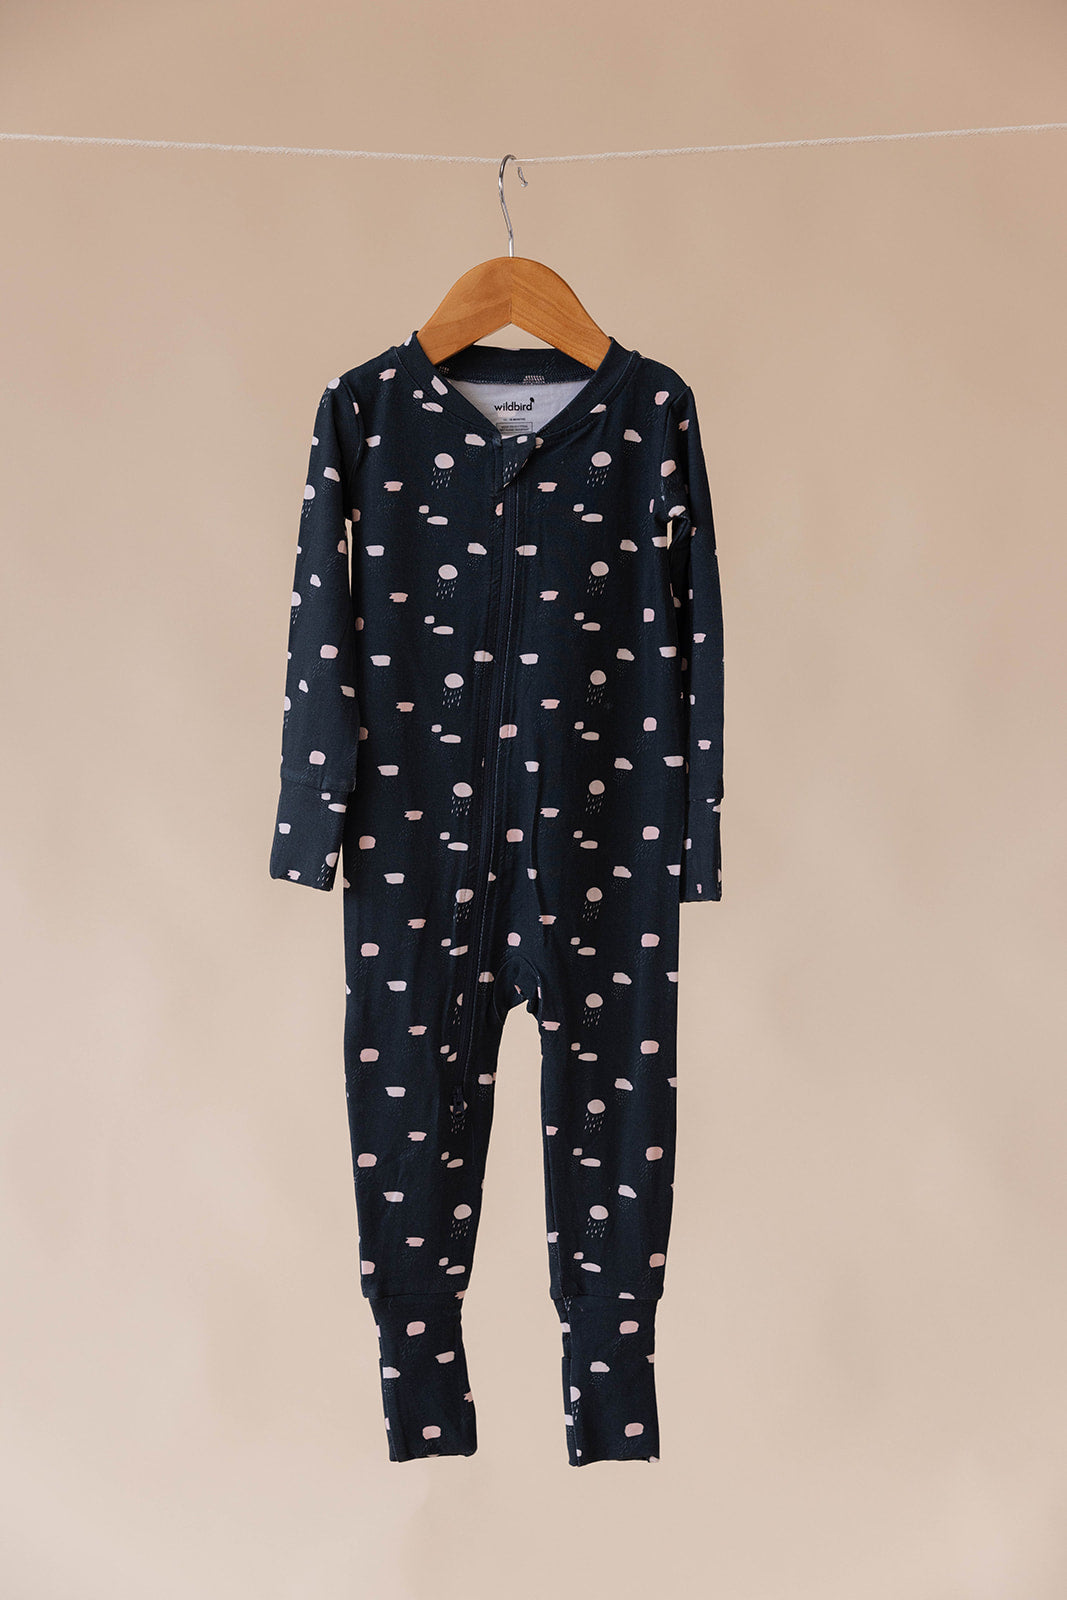 Niall - CloudBlend™ Footless Pajamas